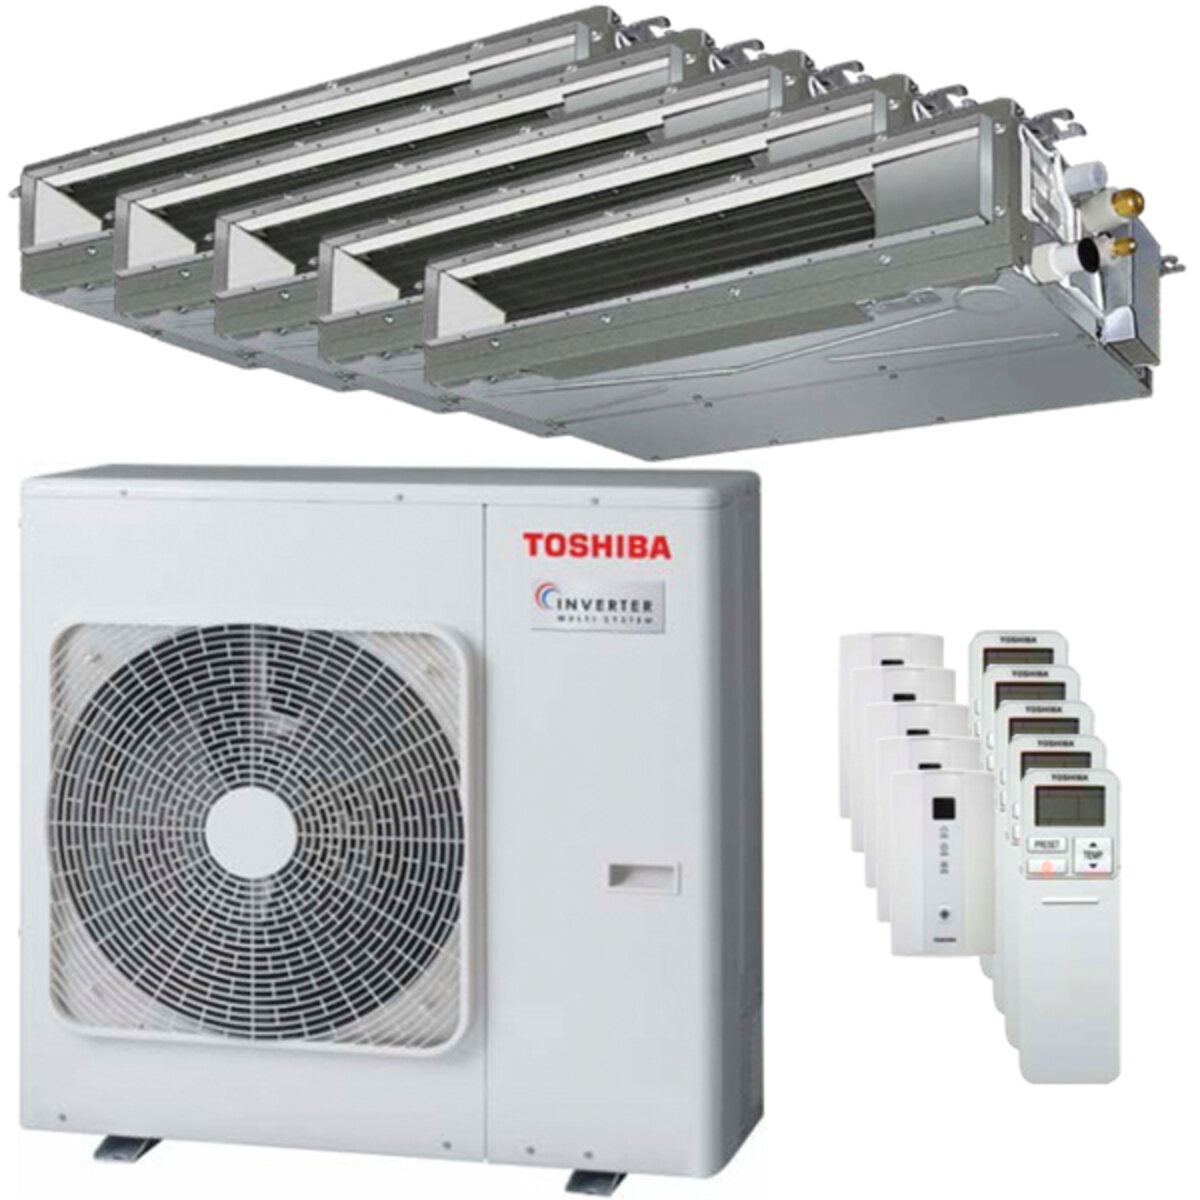 Toshiba Ductable Air Conditioner U2 Penta Split 9000 + 9000 + 12000 + 12000 + 12000 BTU Inverter A++ Außengerät 10,0 kW